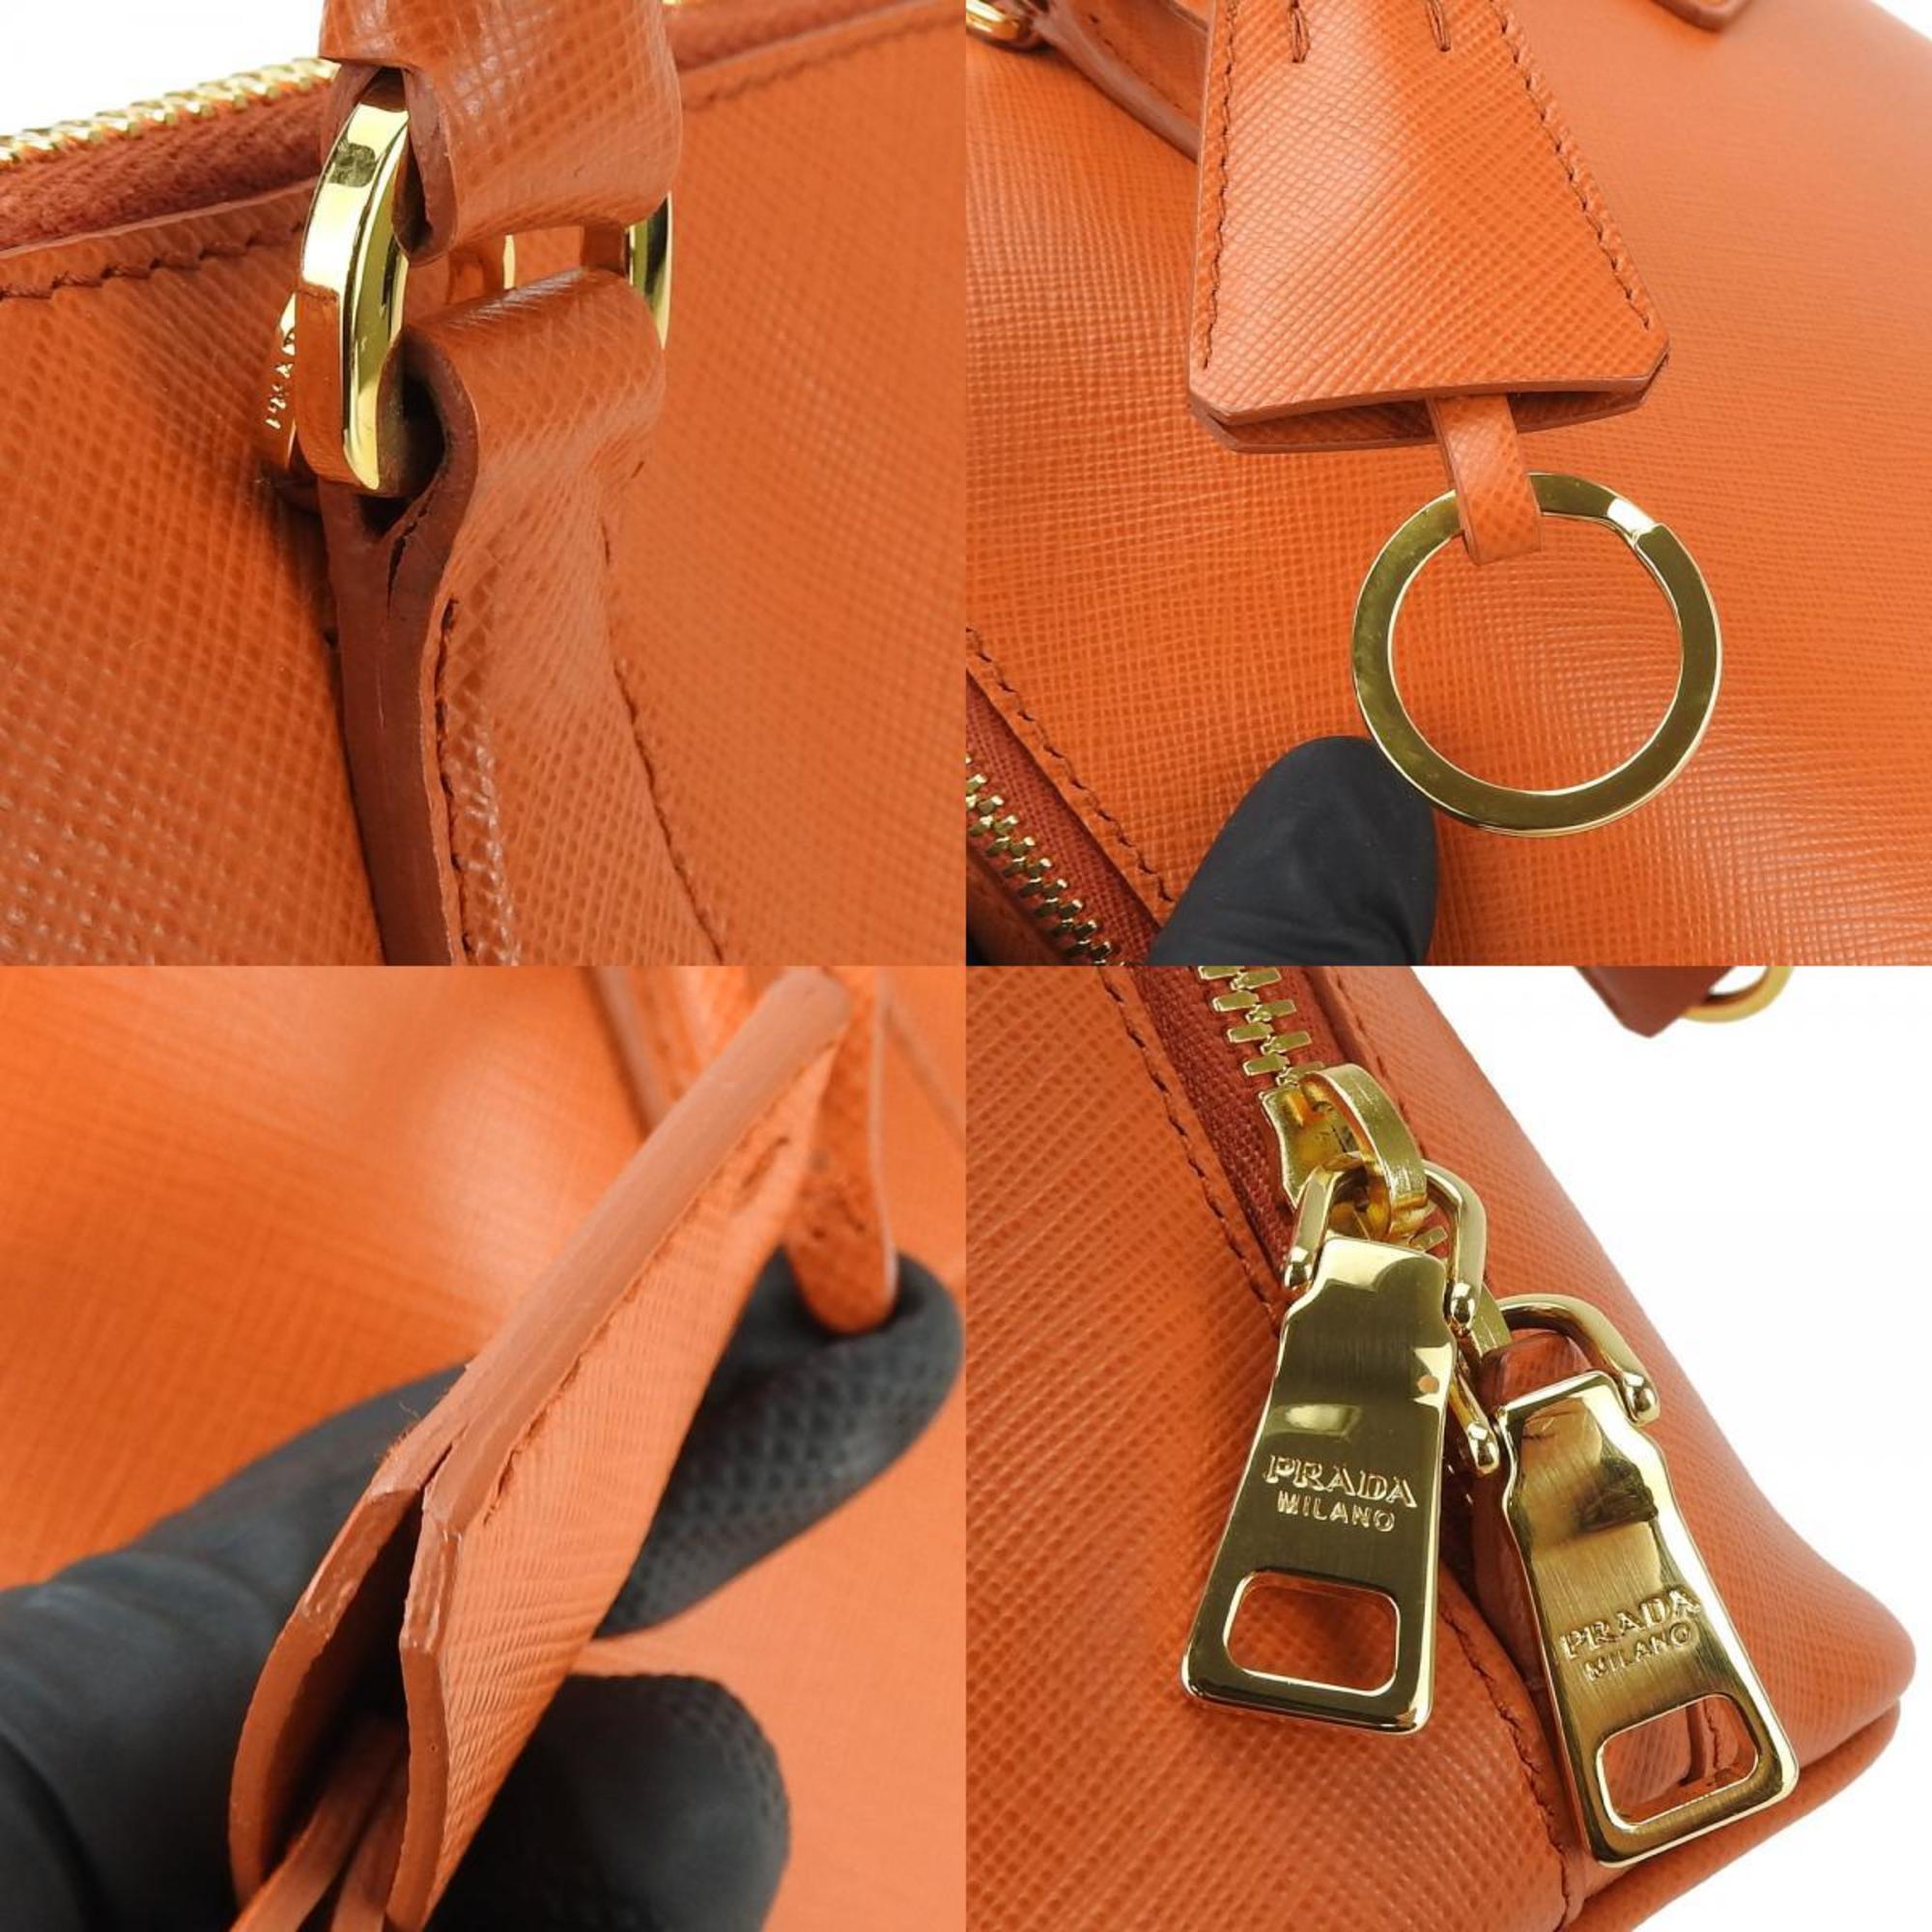 Prada Handbag BL0838 Saffiano Leather Papaya Orange Shoulder Bag for Women PRADA